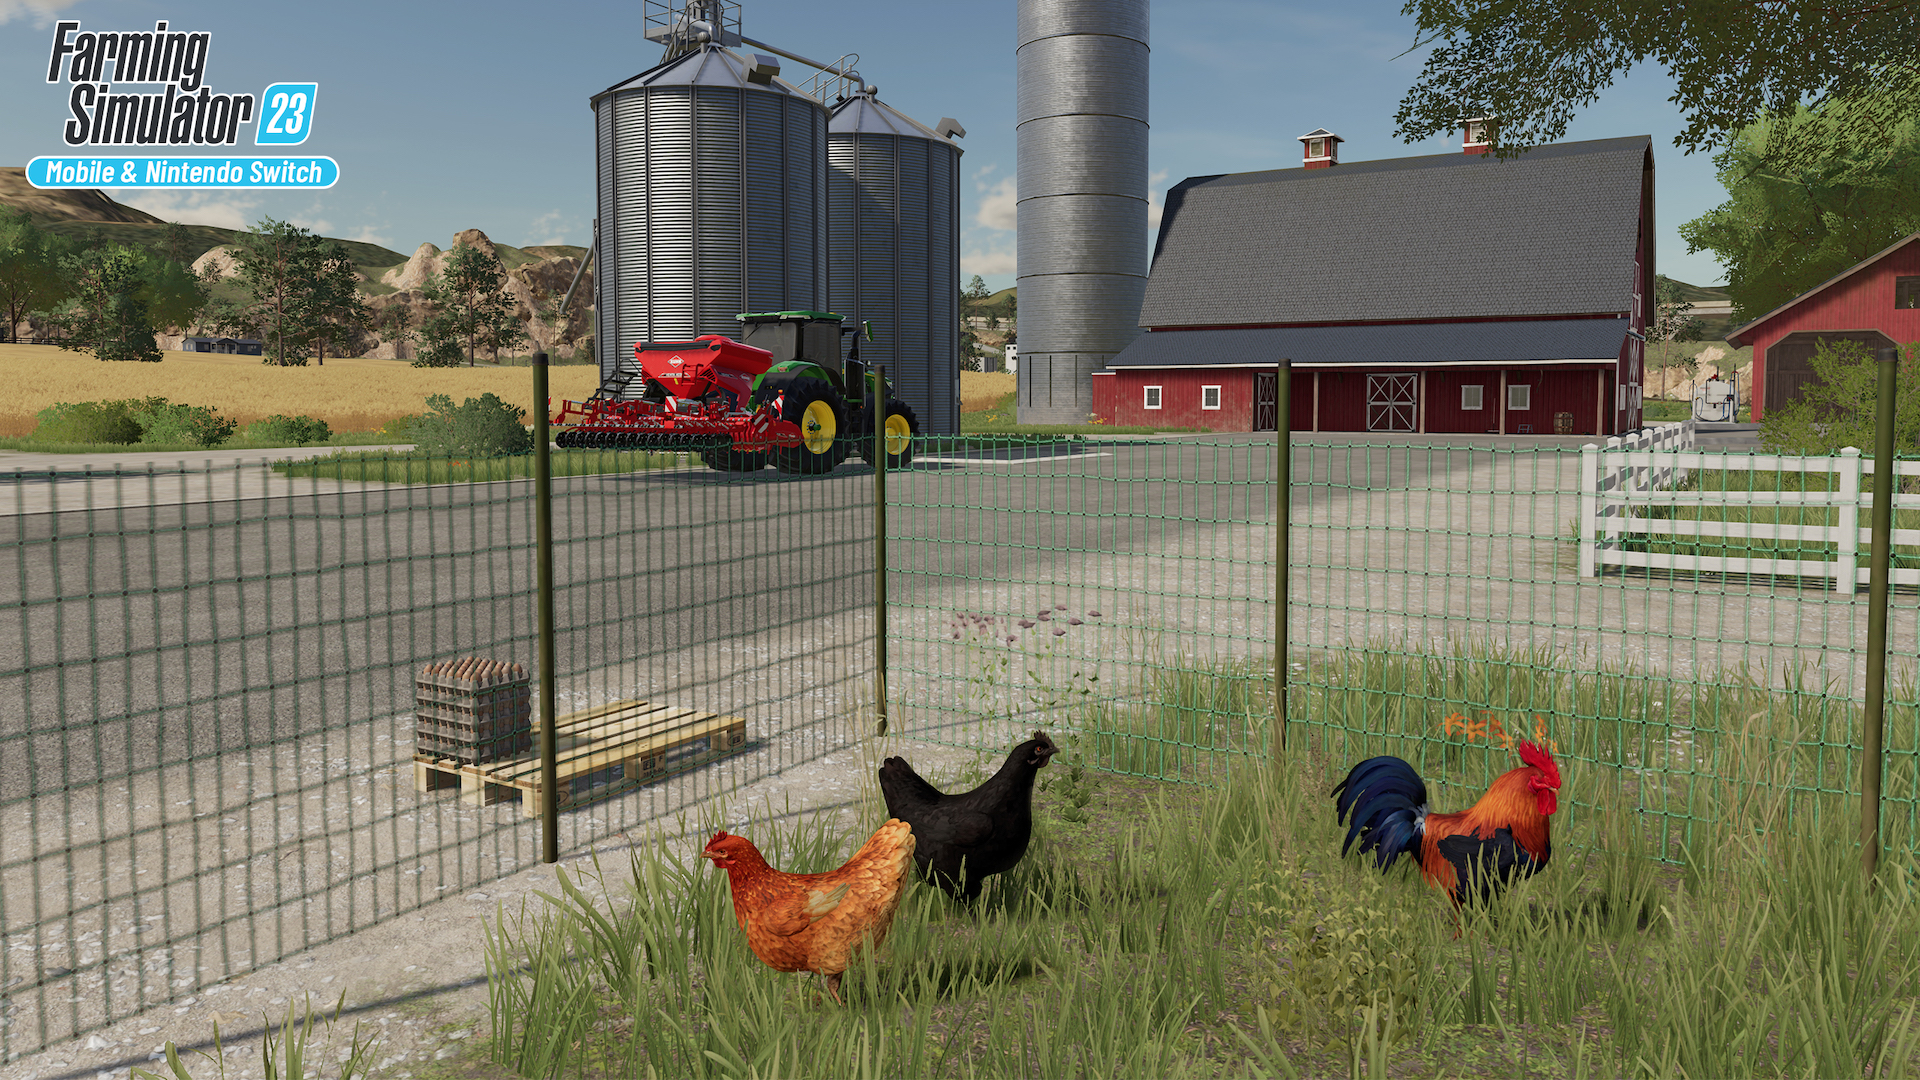 Modern Farm Simulator 19: Trac – Apps no Google Play